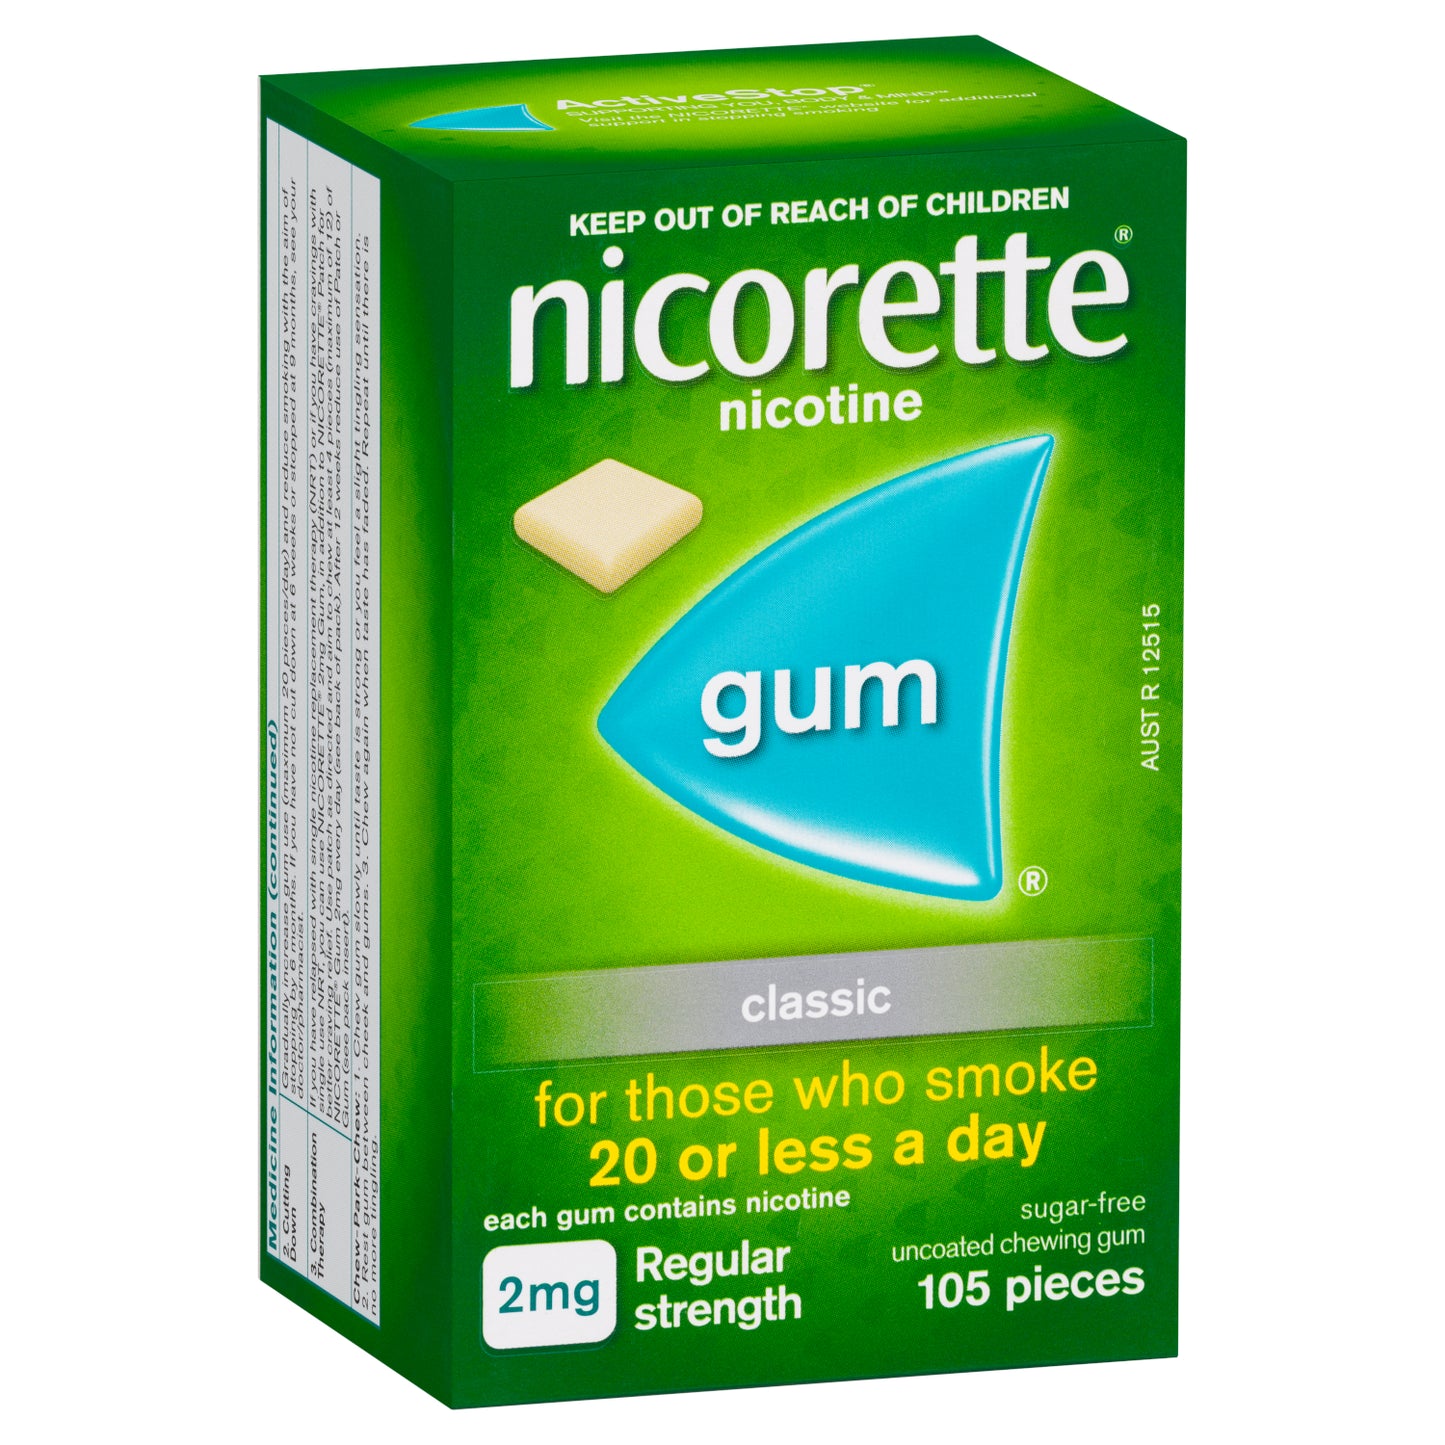 Nicorette Regular Strength Chewing Gum 2mg - Classic